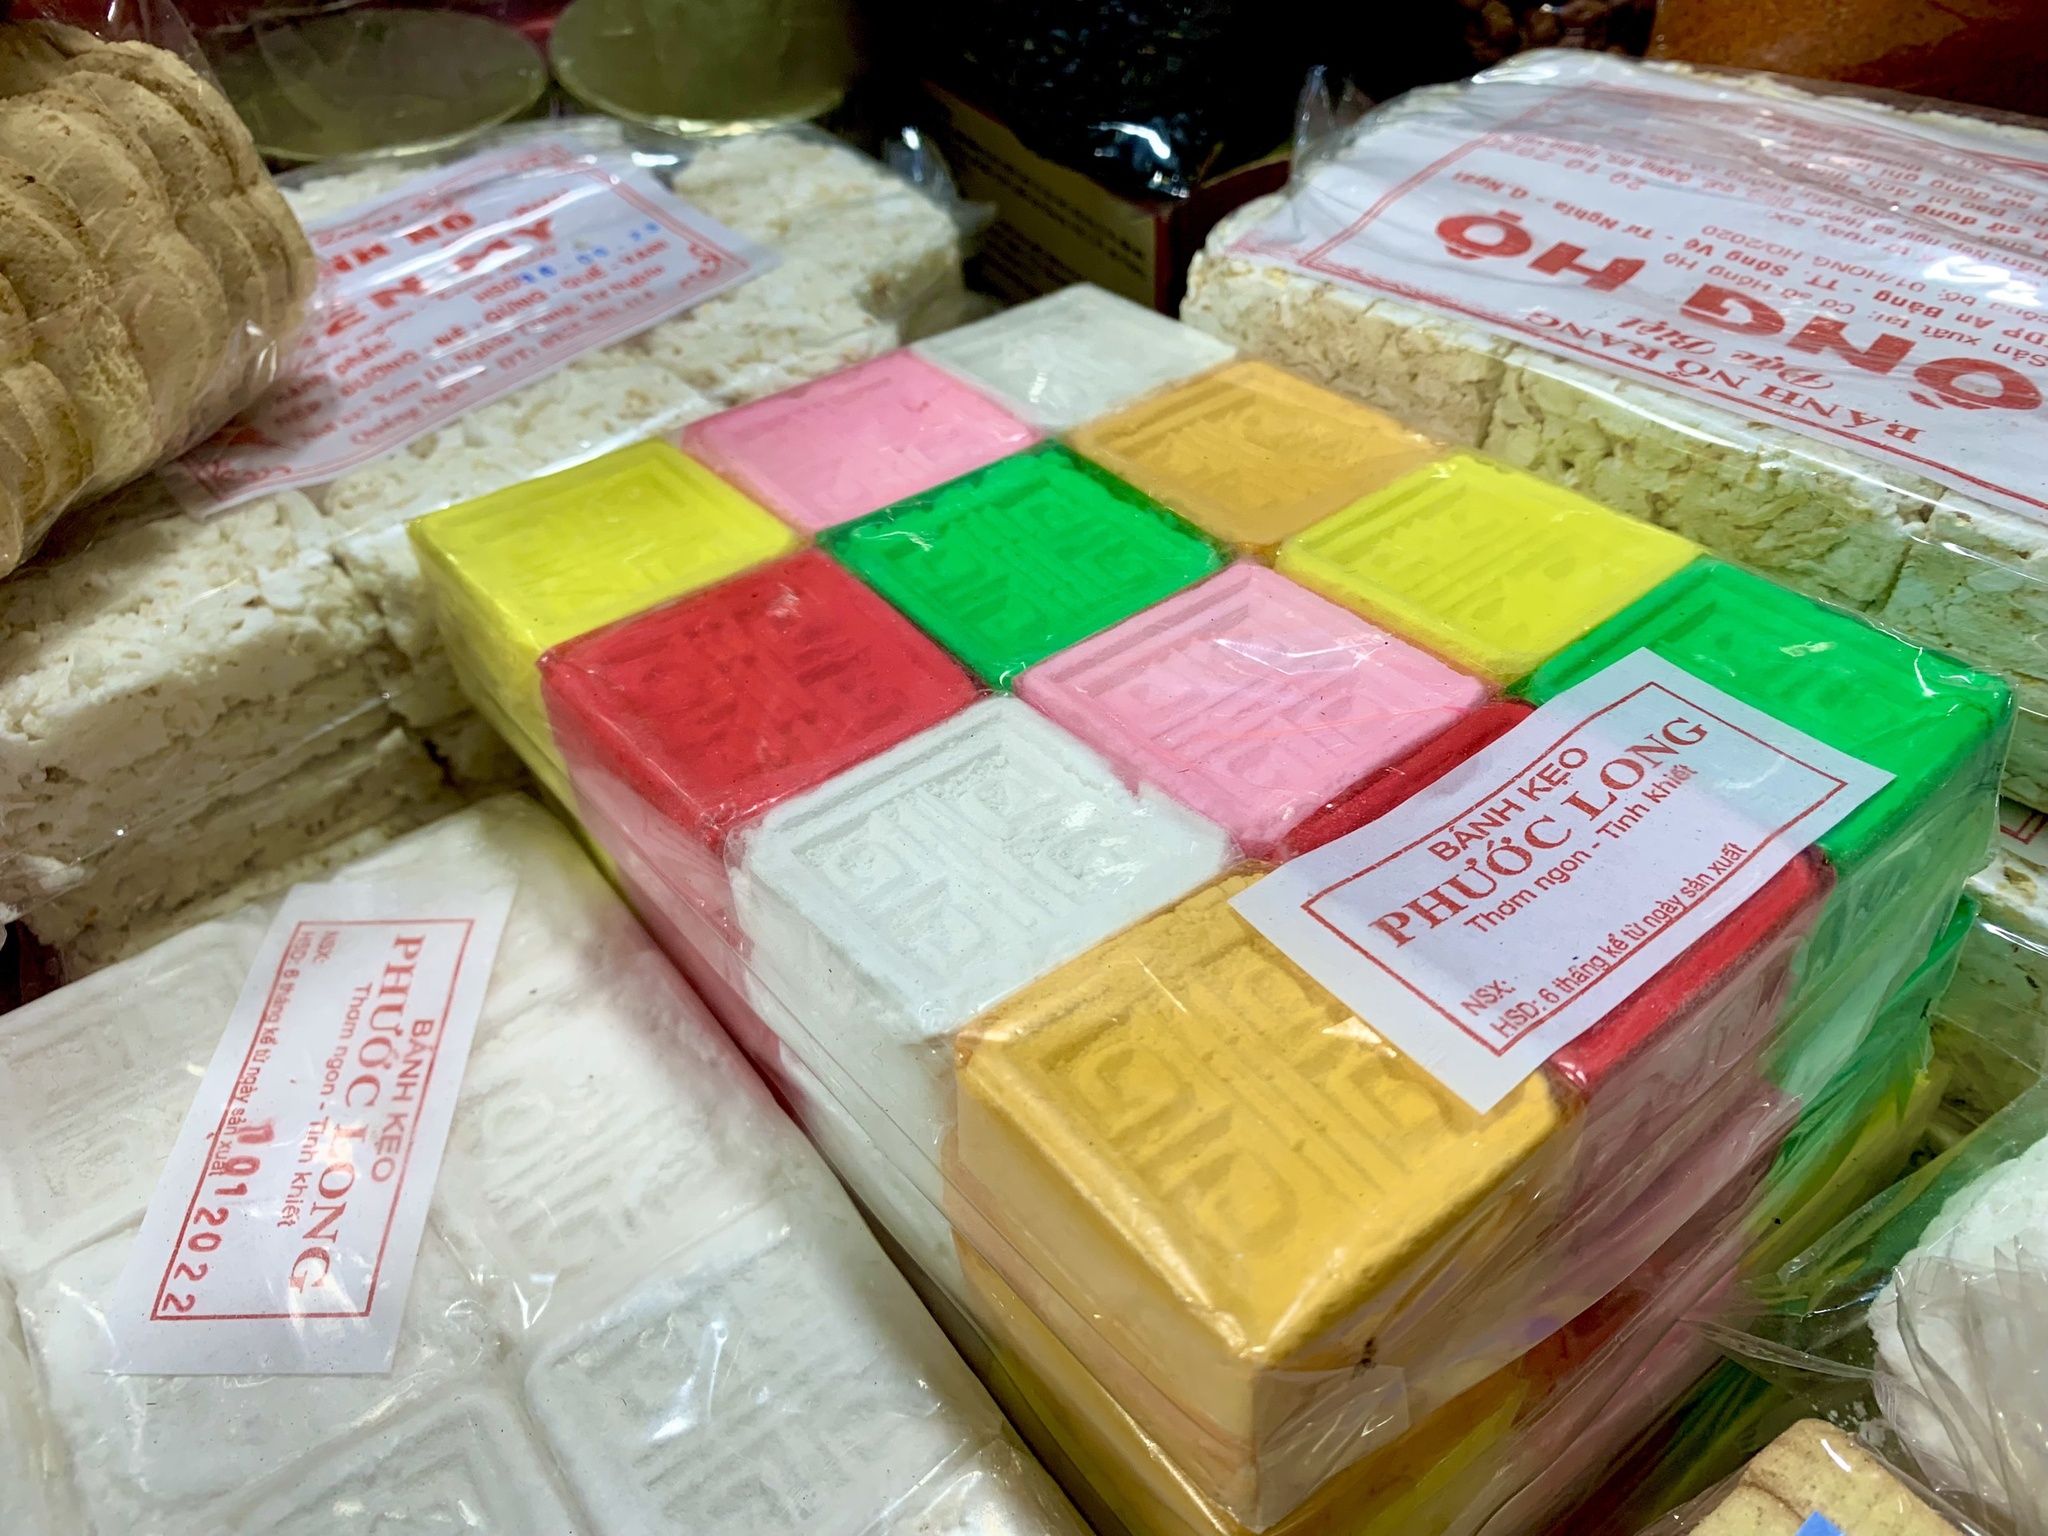 Ghé chợ Bà Hoa mua bánh in: 'Không có thì tết cứ thấy thiếu thiếu' - ảnh 1